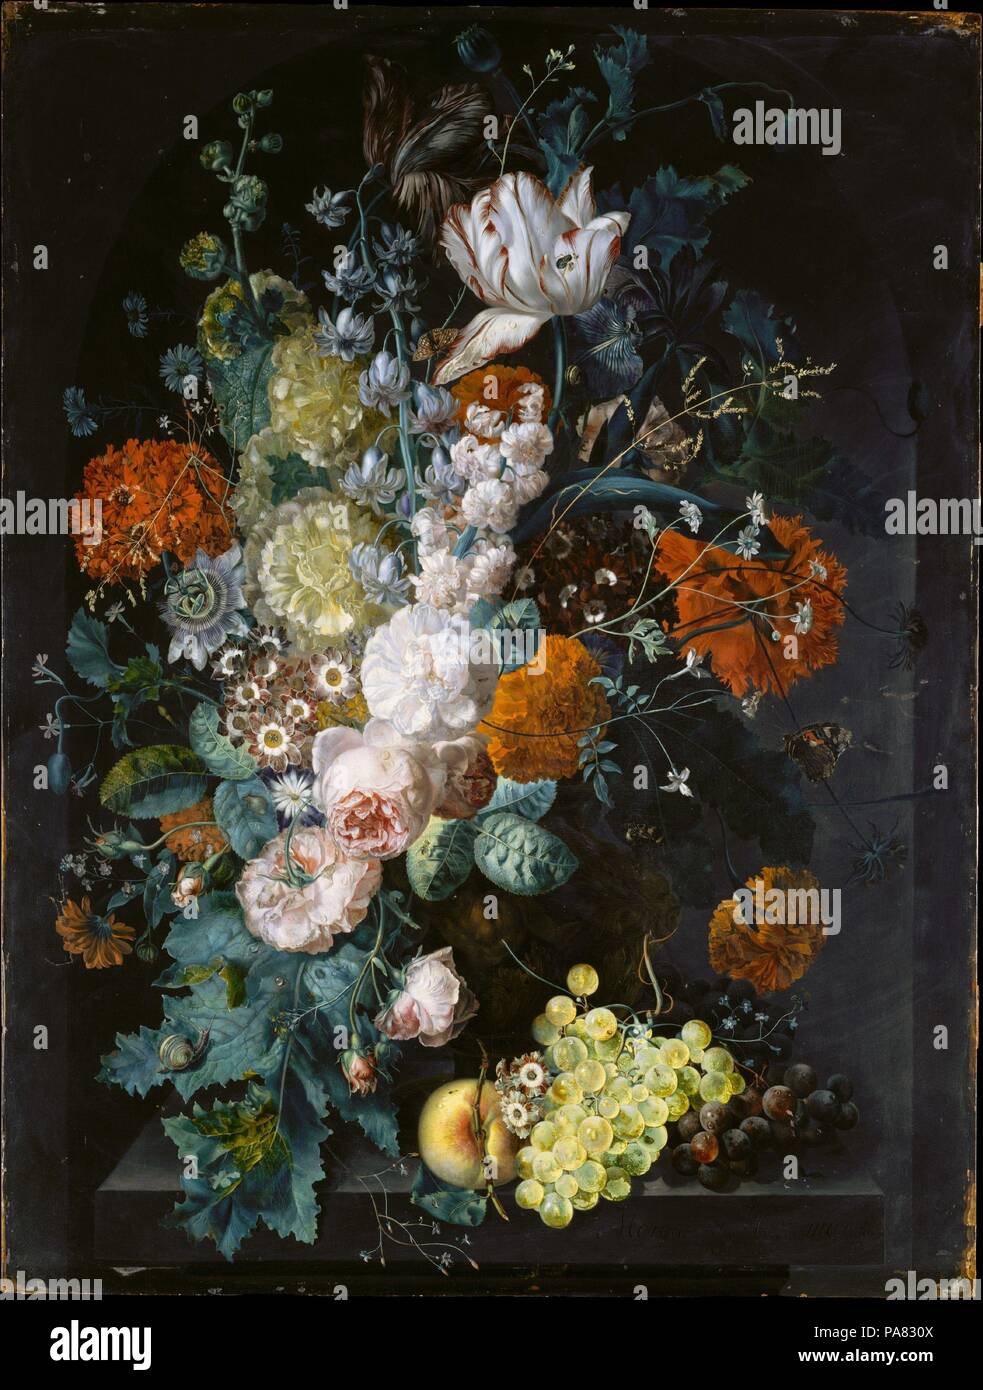 Eine Vase mit Blumen. Artist: Margareta Haverman (Niederländisch, aktiv von 1716 - starb 1722 oder später). Abmessungen: 31 1/4 x 23 3/4 in. (79,4 x 60,3 cm). Datum: 1716. Einige weibliche Künstler der Niederlande spezialisiert in Flower Bilder, die Besten bekannt, Rachel Ruysch (1664-1750). Trotz seiner geheimnisvollen Natur, Jan van Huysum akzeptiert Haverman als sein Schüler in Amsterdam. Die einzige andere bekannte Arbeit von haverman ist ein unterzeichnet, aber undatierten Blume Stück in Kopenhagen. Museum: Metropolitan Museum of Art, New York, USA. Stockfoto